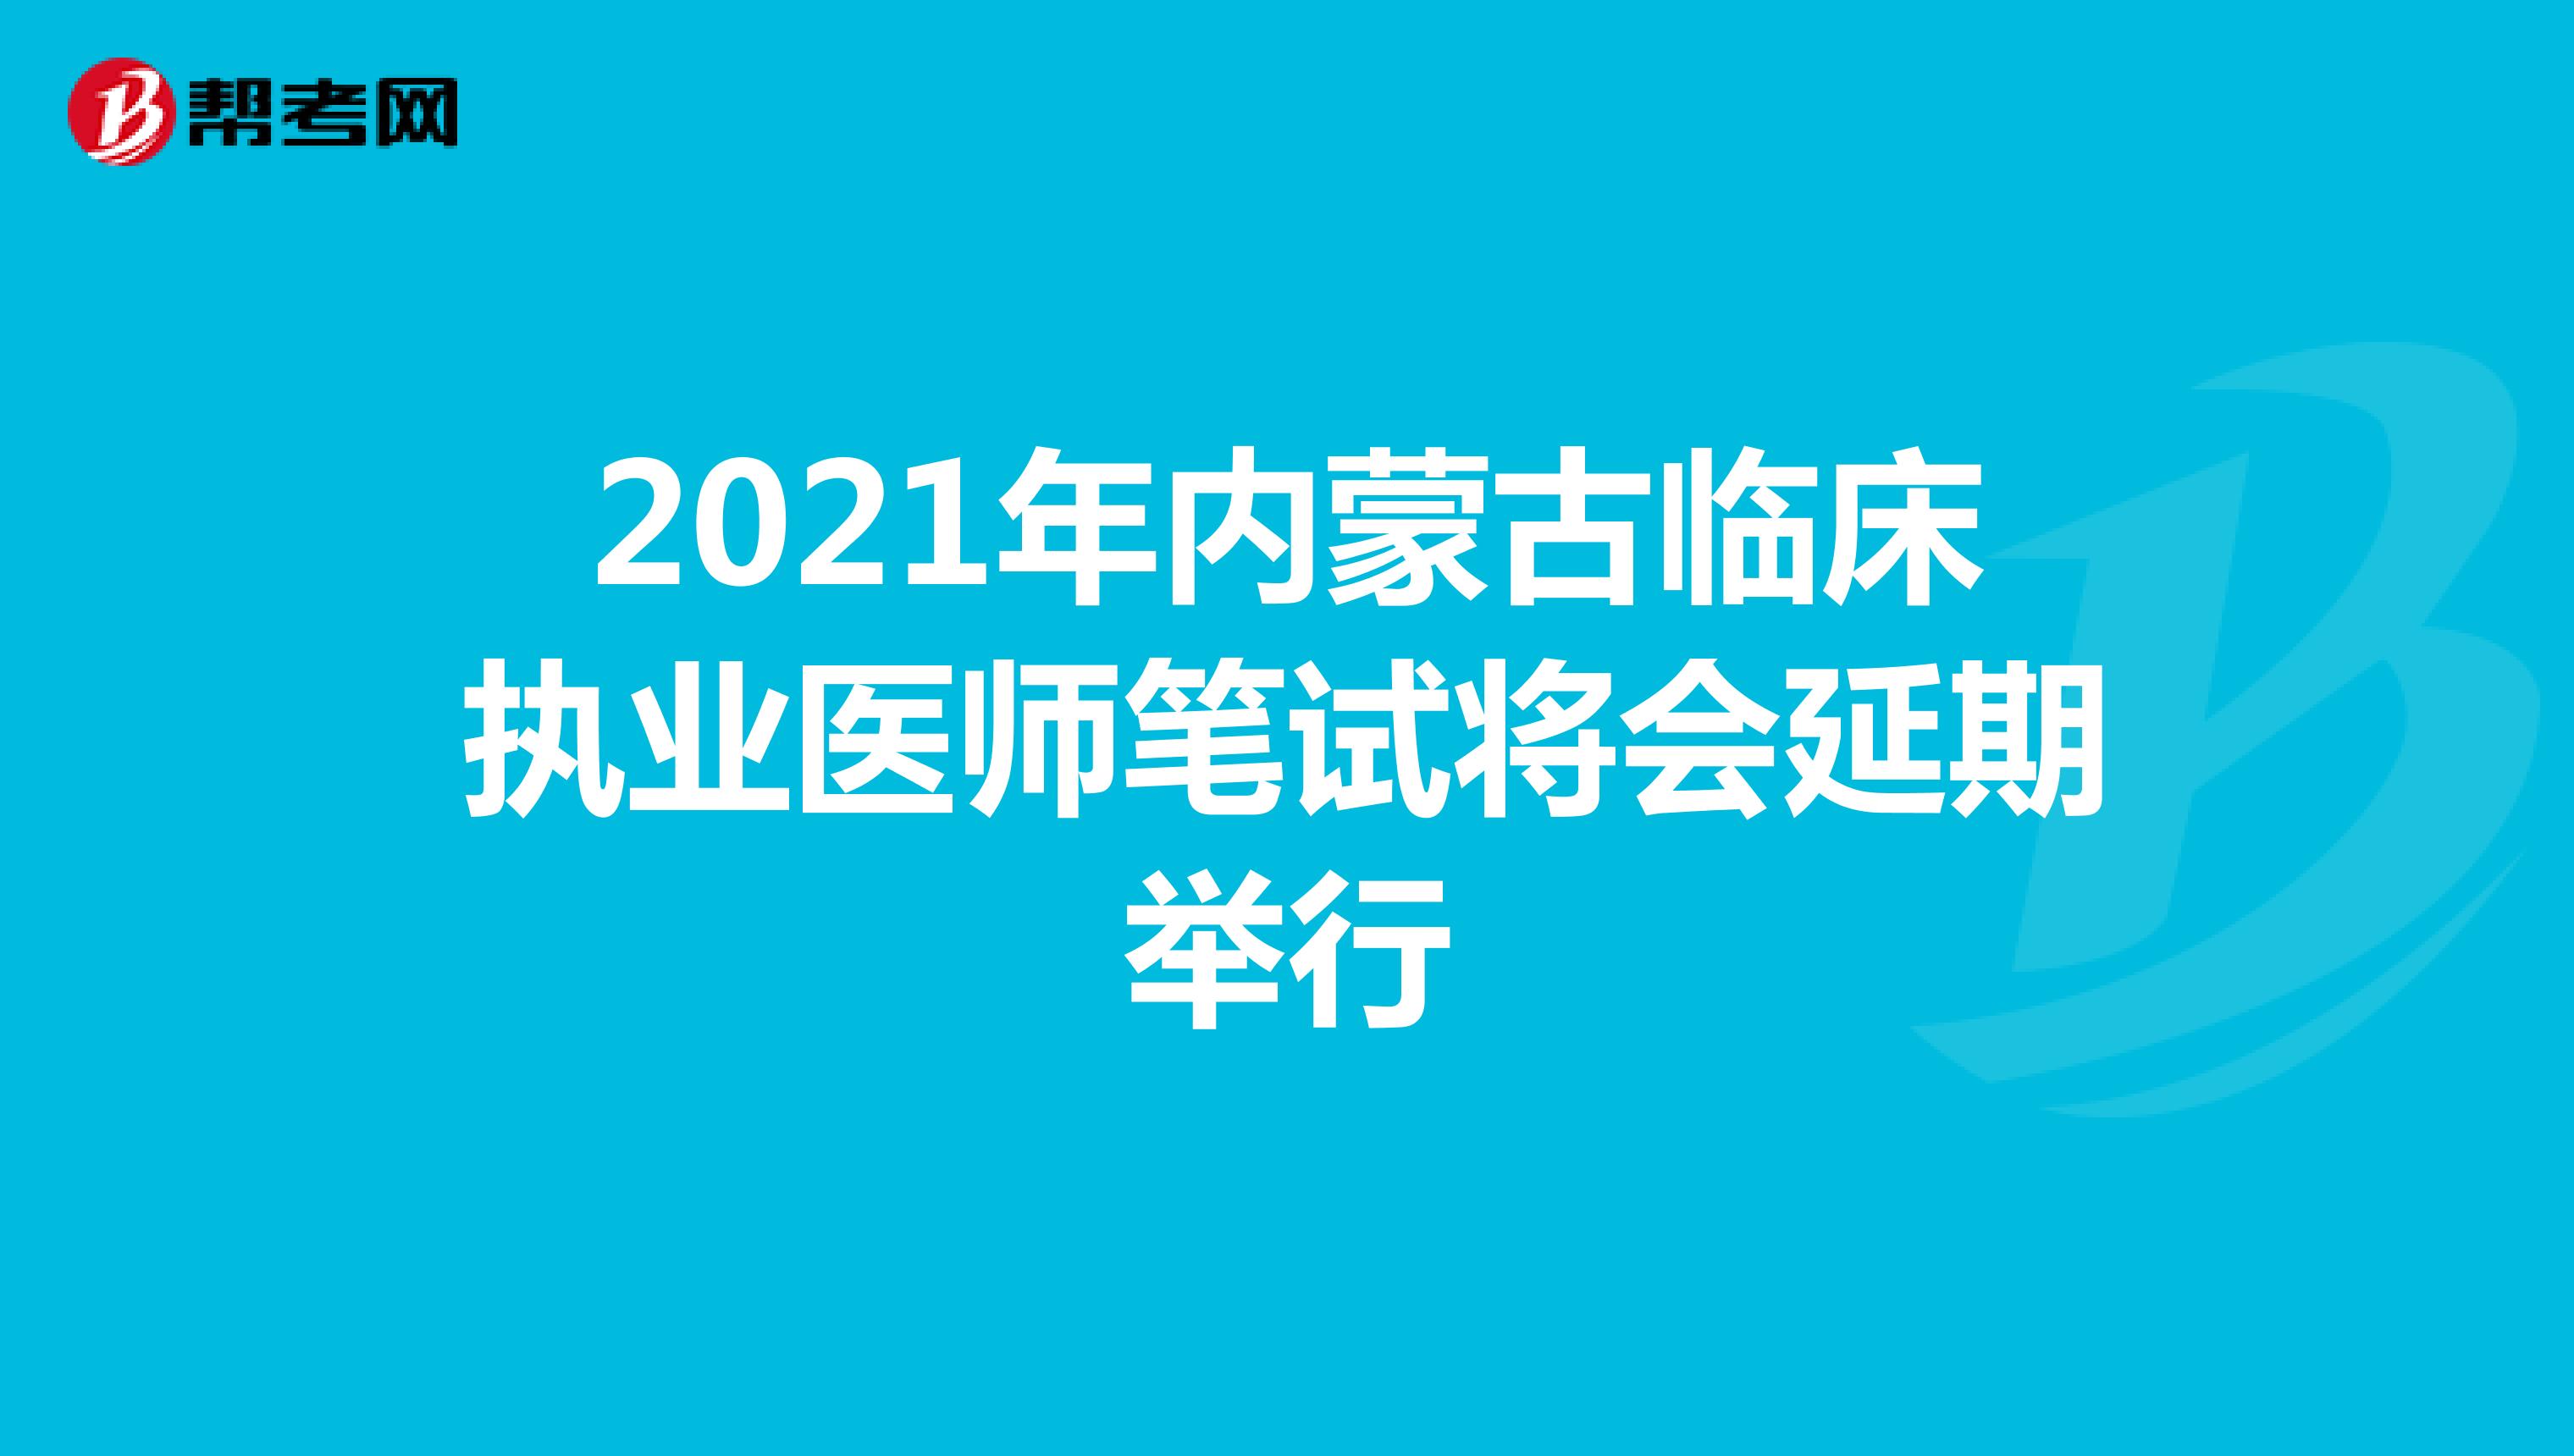 2021年内蒙古临床执业医师笔试将会延期举行